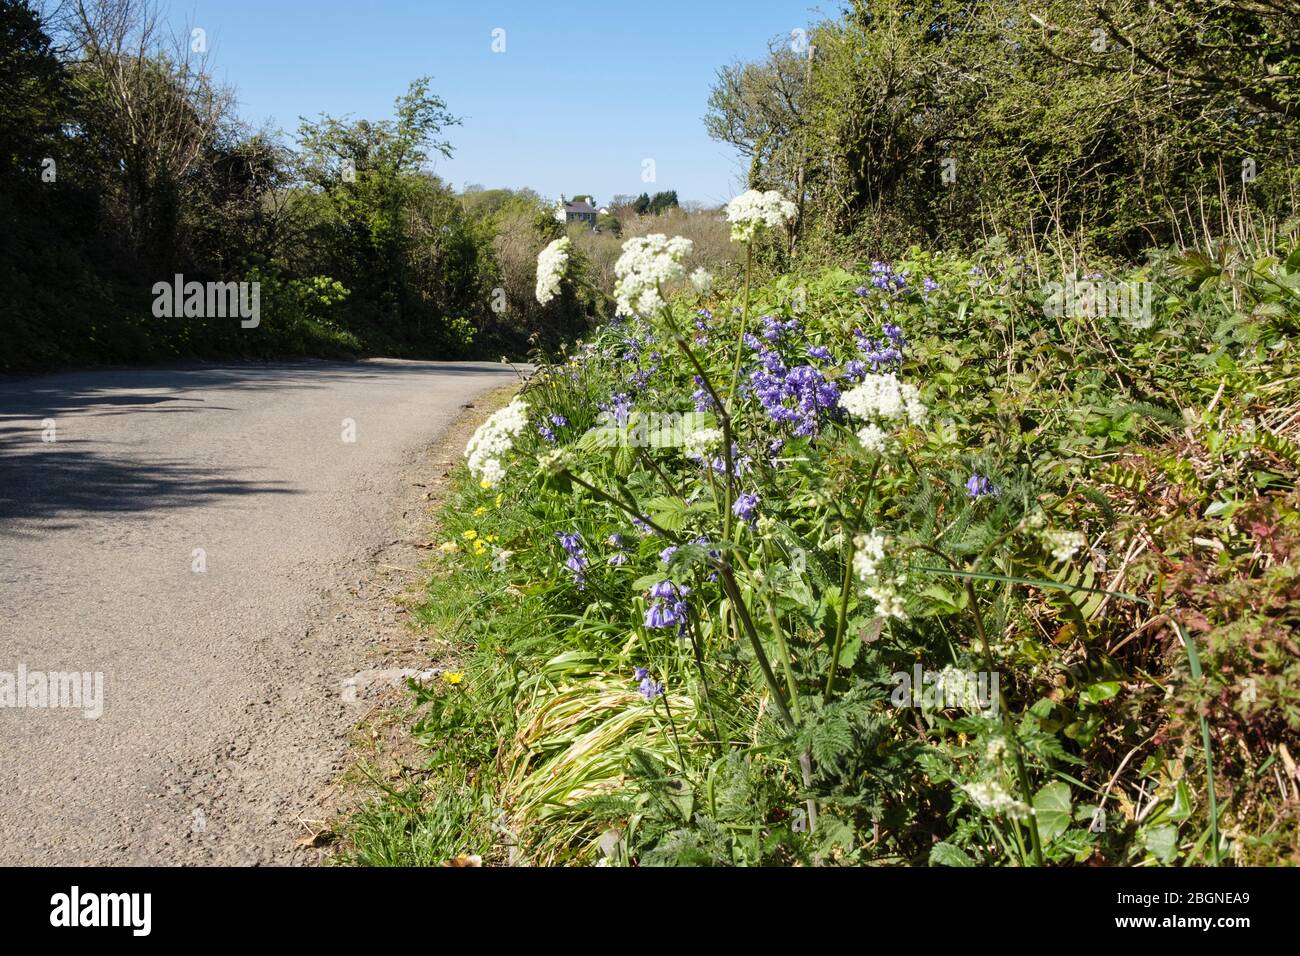 Route calme de campagne avec fleurs sauvages fleuries sur un verge d'herbe au printemps. Benllech, Île d'Anglesey, Pays de Galles du Nord, Royaume-Uni, Grande-Bretagne Banque D'Images